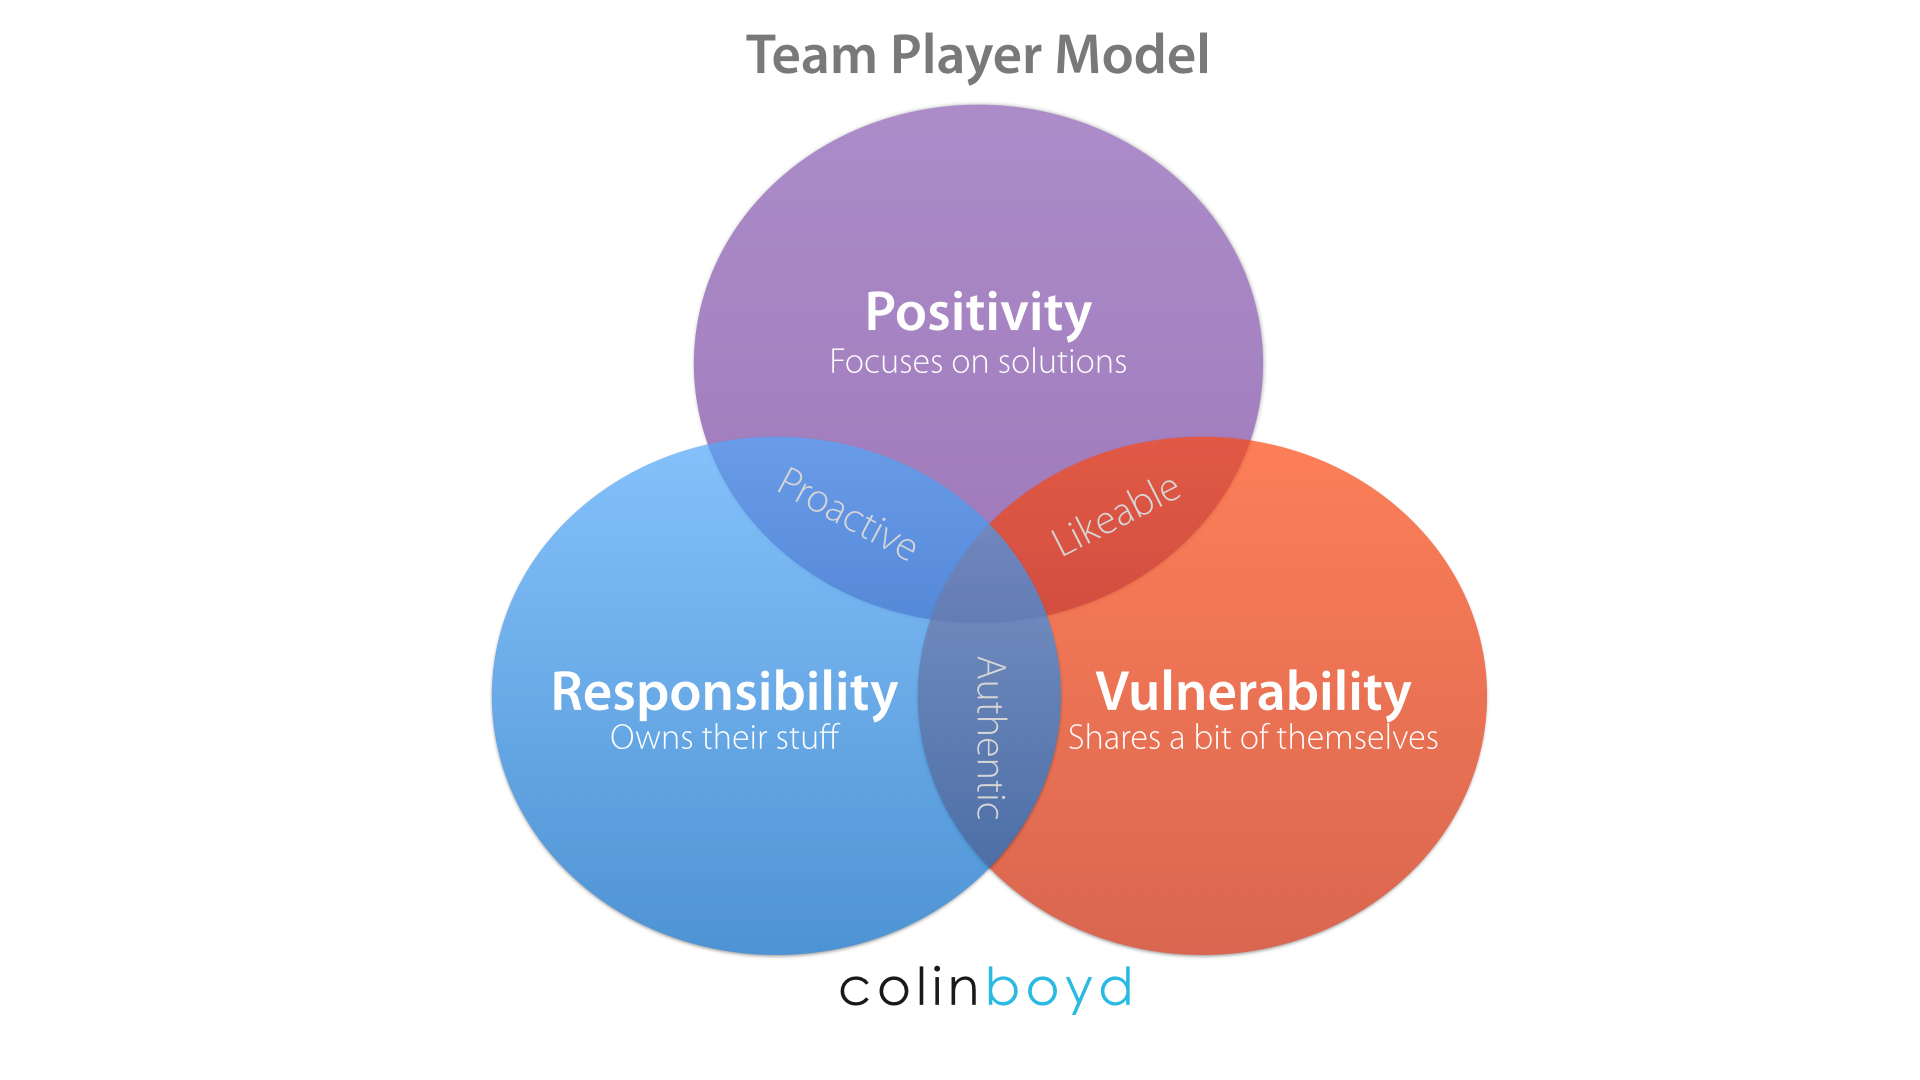 Team Player Model_Colin Boyd